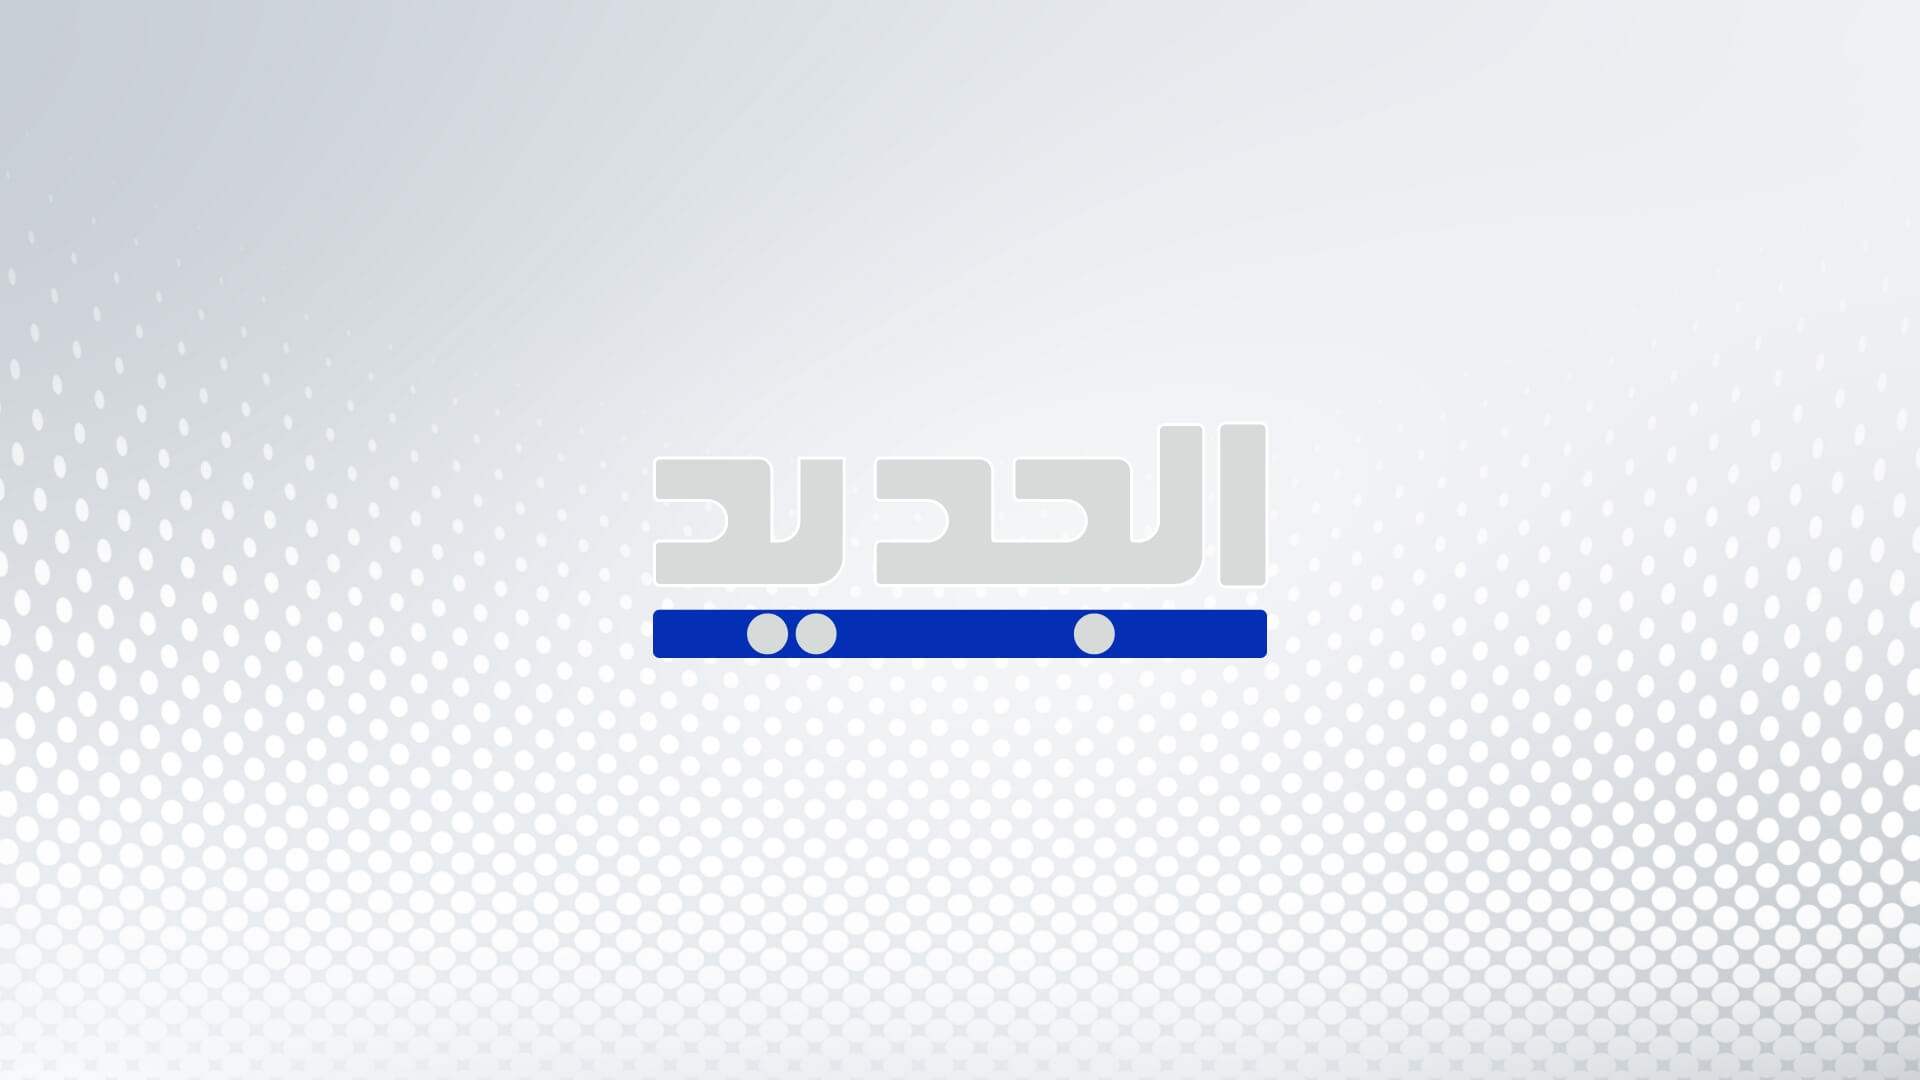 كتائب القسام تعلن قصف تل أبيب برشقة صاروخية وصفارات الإنذار تدوي في المدينة وضواحيها